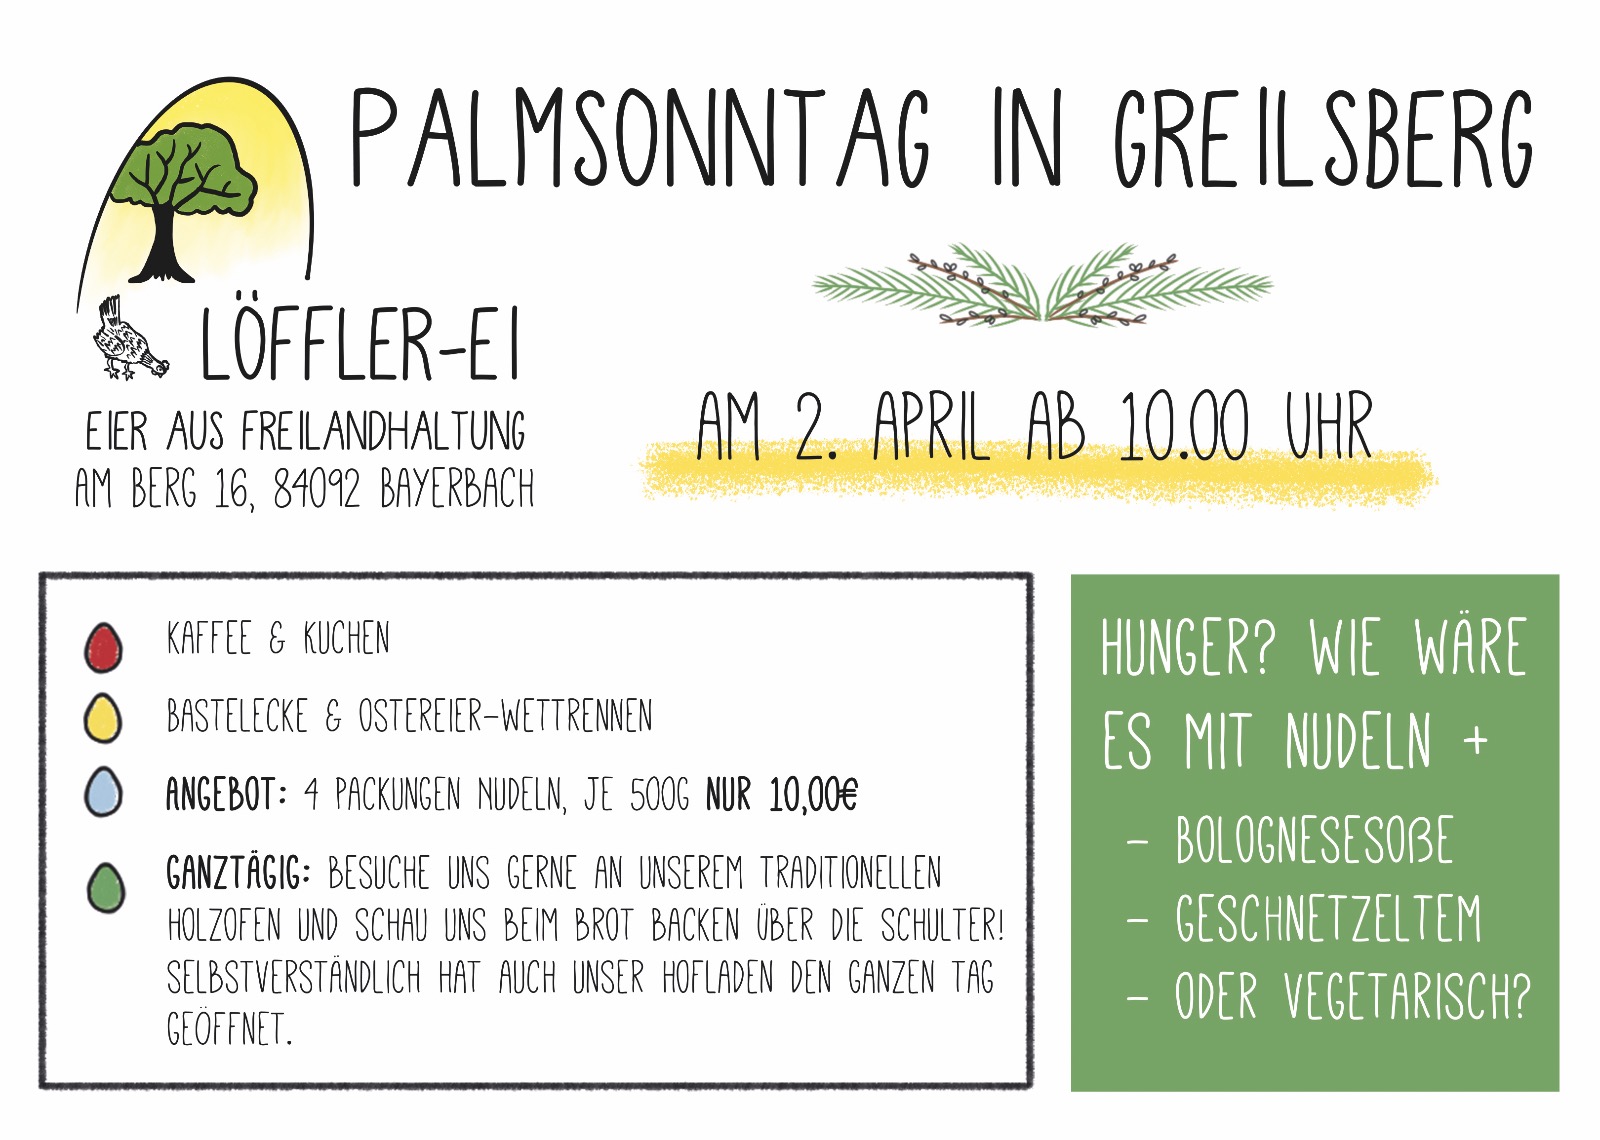 Palmsonntag in Greilsberg, 02.04.2023. Geöffnet ab 10 Uhr mit Kinderunterhaltung, Essen und Nudelnangebot, Brot backen, Hofladen geöffnet